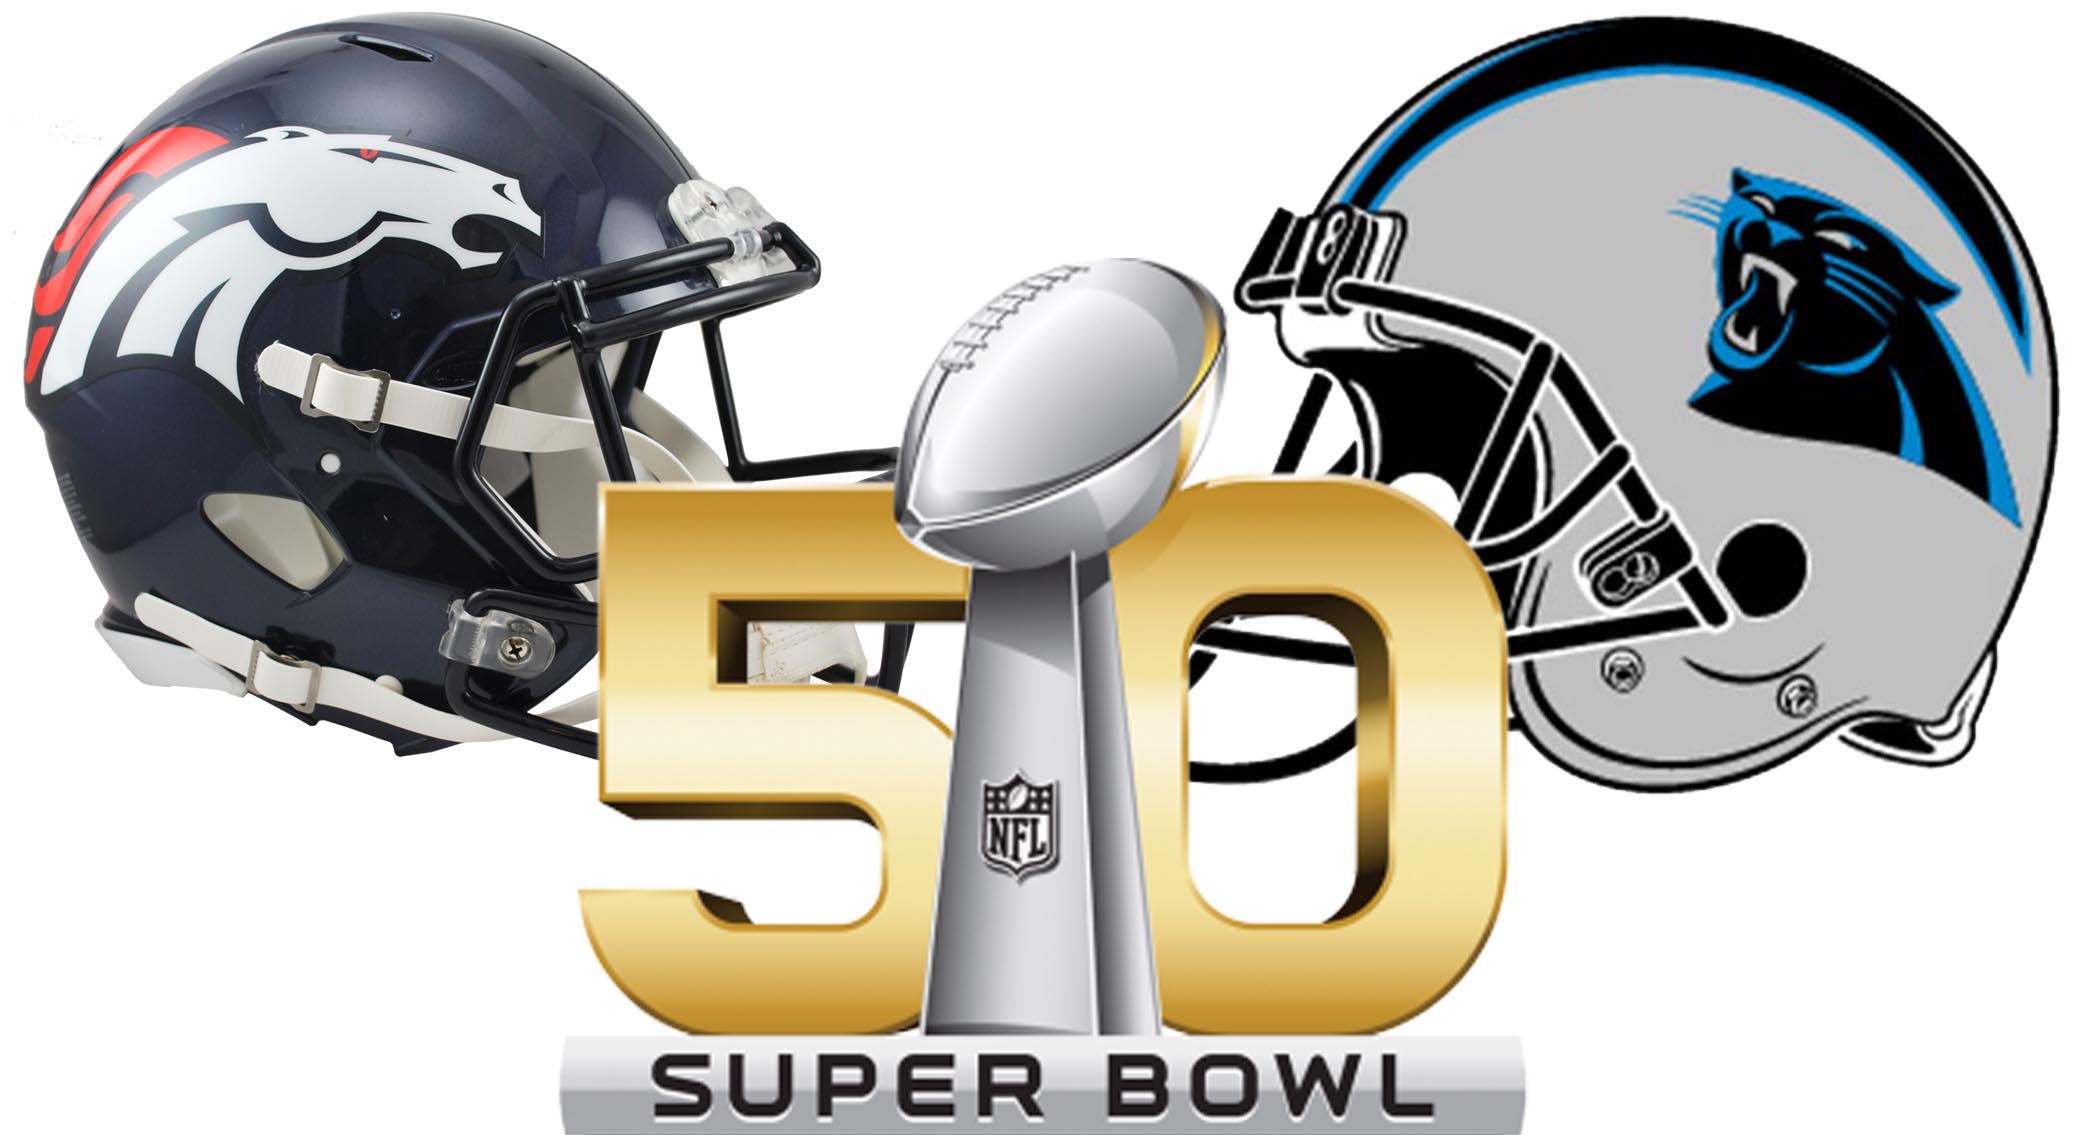 ¿Quién ganará el Super Bowl 50?